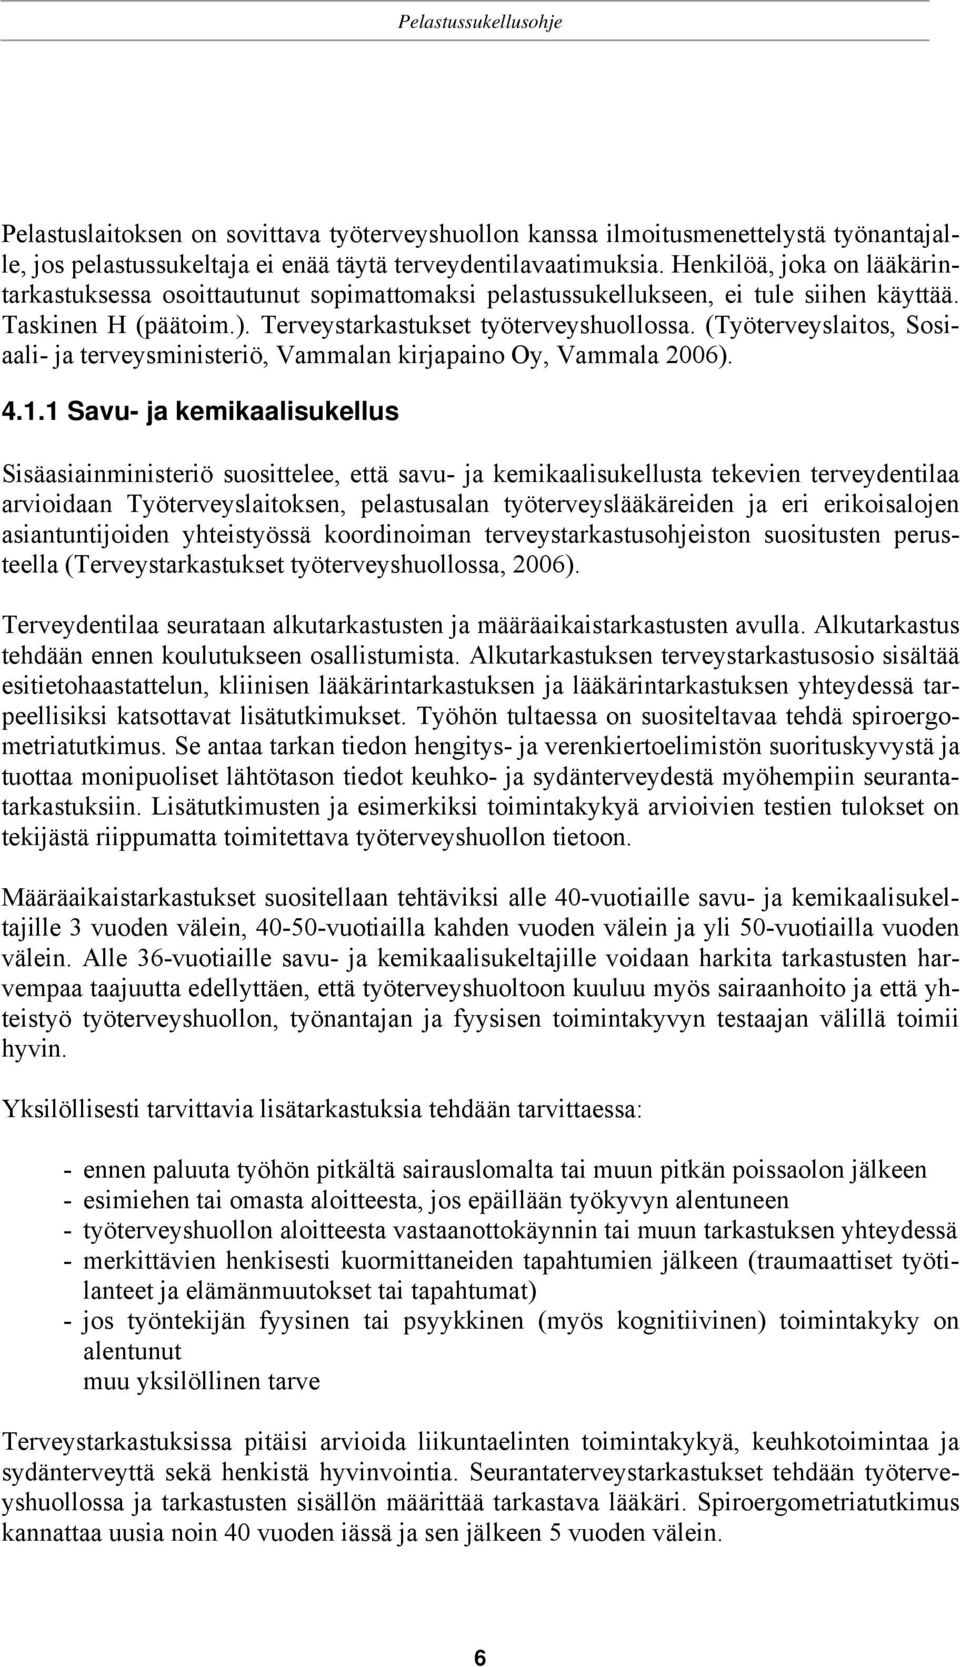 (Työterveyslaitos, Sosiaali- ja terveysministeriö, Vammalan kirjapaino Oy, Vammala 2006). 4.1.